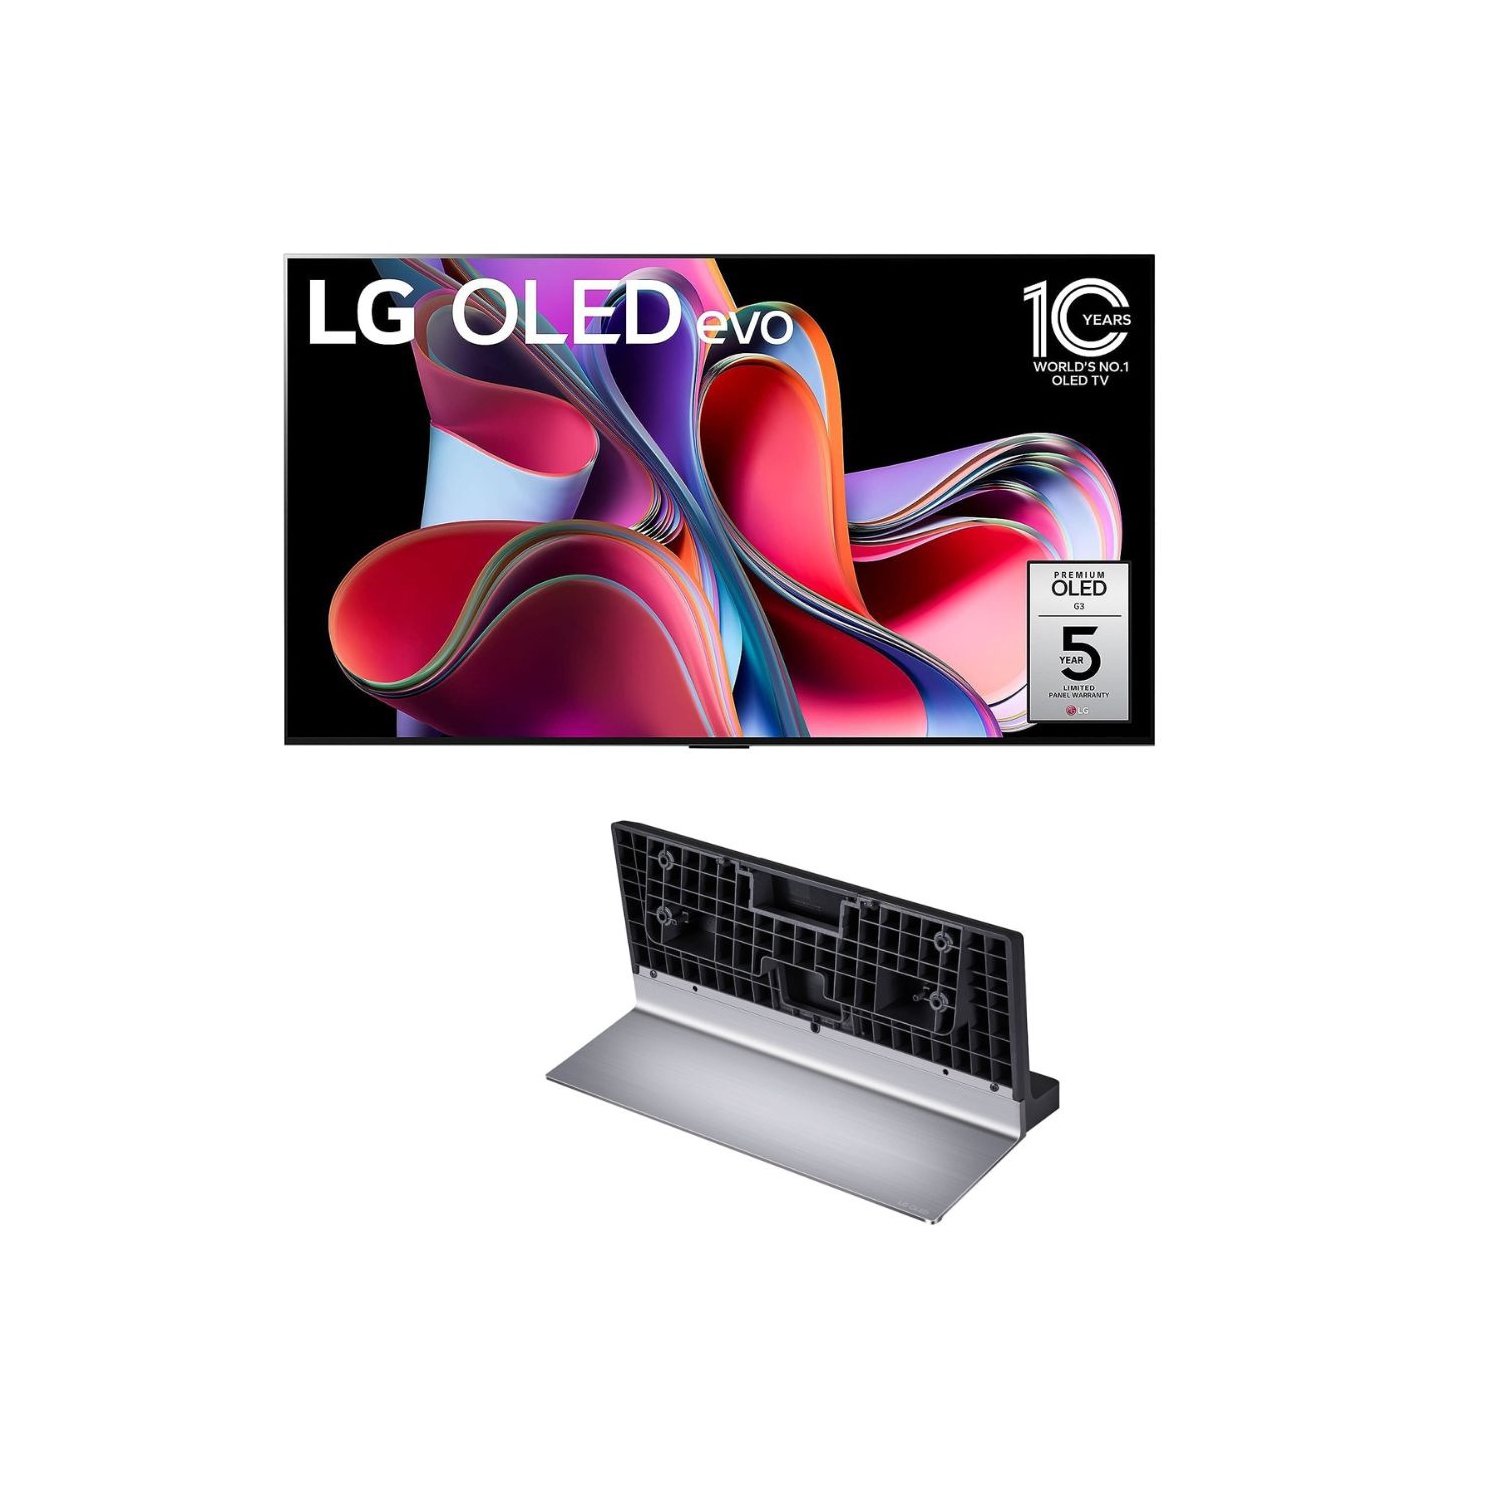 LG OLED 55" TV with G3 Pedestal Stand [SR-G3WU55 & OLED55G3PUA]